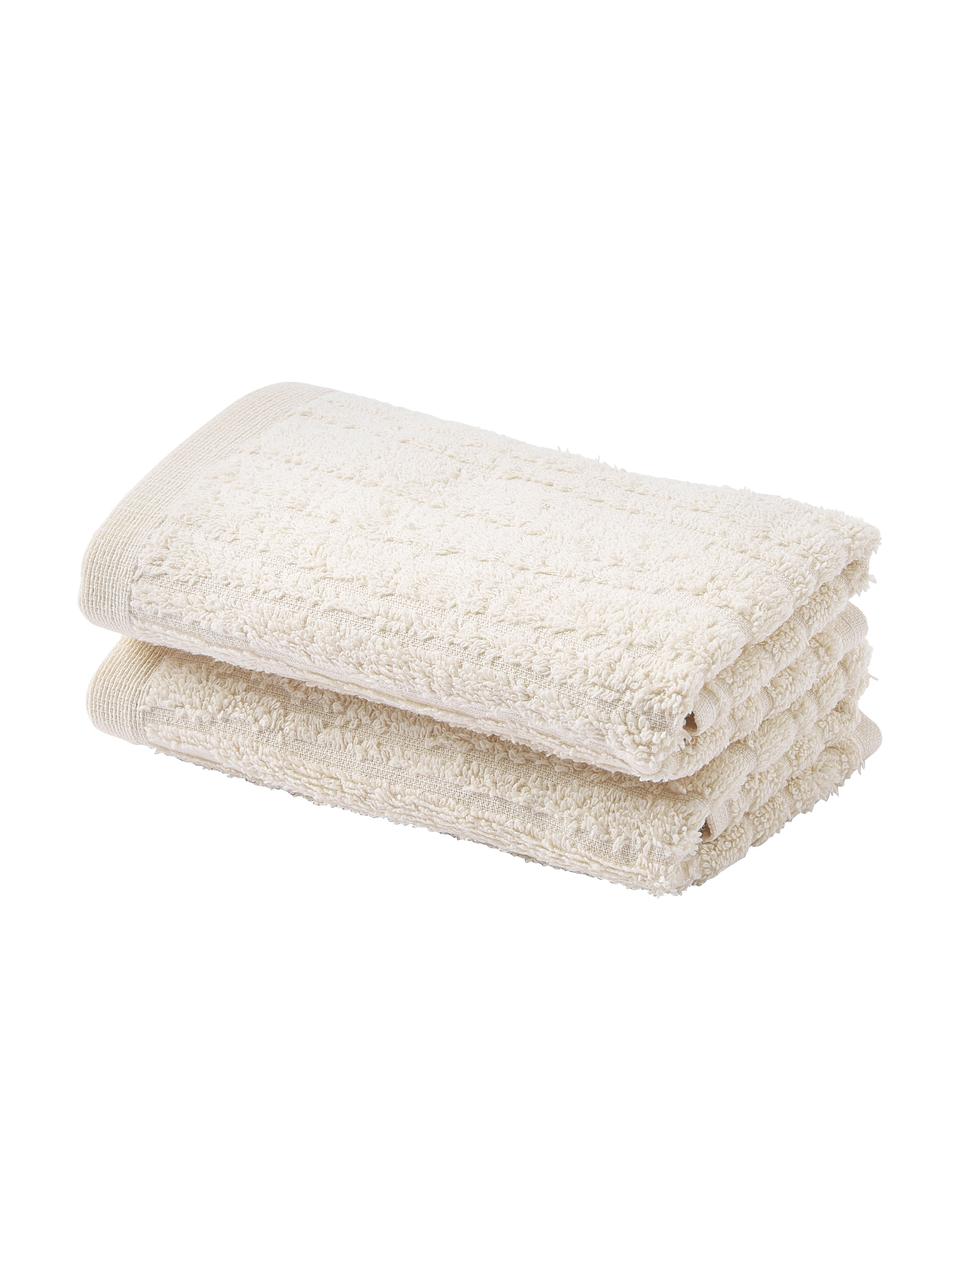 Ręcznik z bawełny Audrina, różne rozmiary, Beżowy, Ręcznik kąpielowy, S 70 x D 140 cm